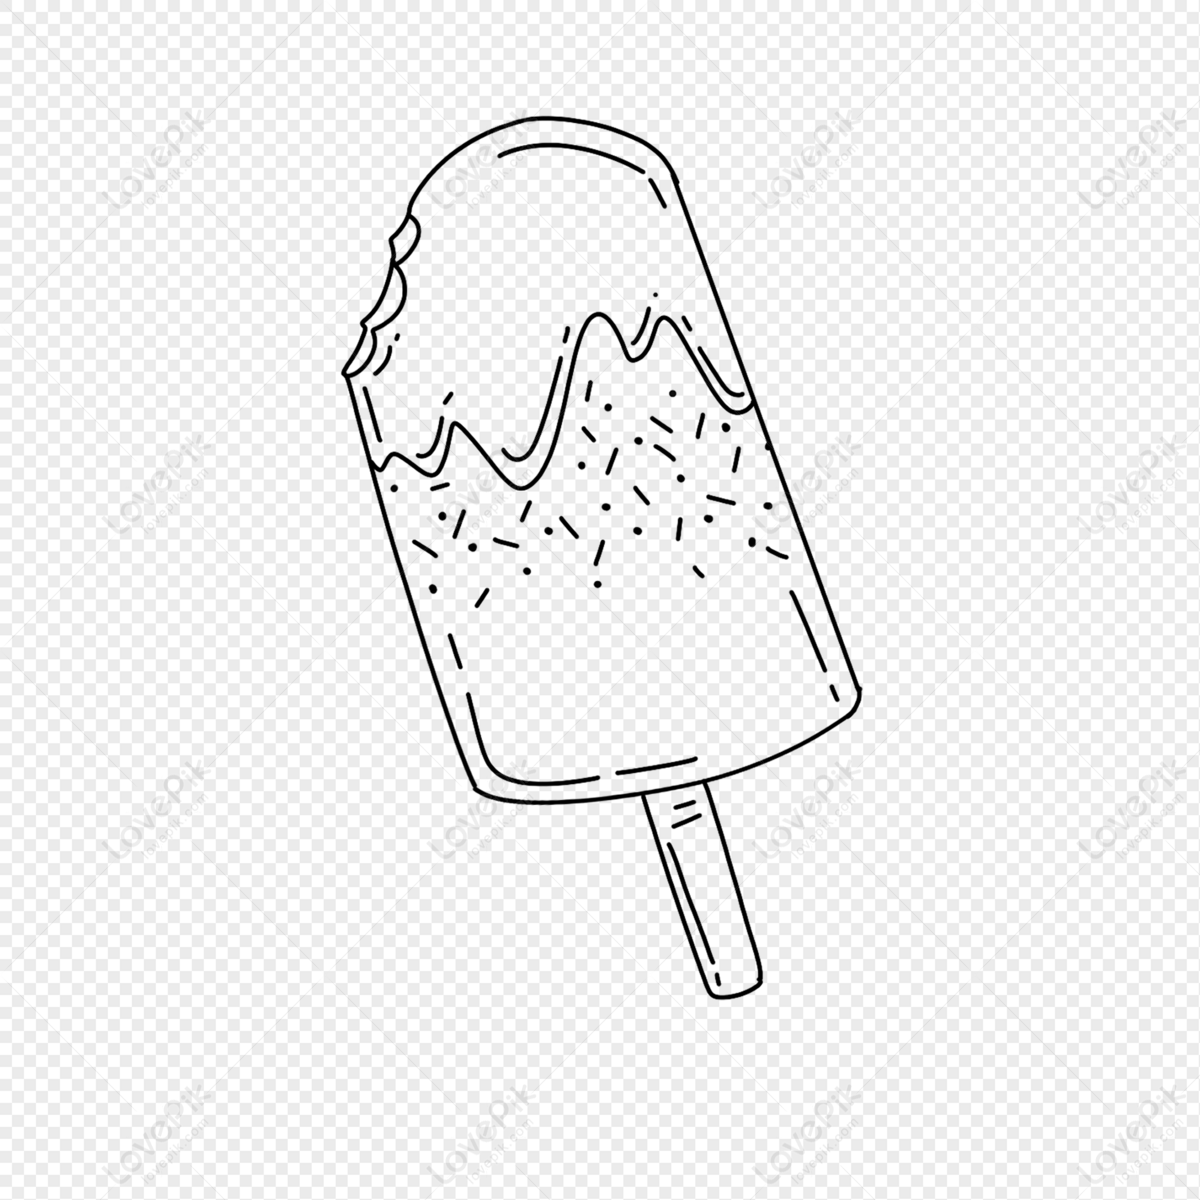 Kem Que Hình PNG: Khám phá hương vị ngọt ngào của kem que thông qua hình ảnh chất lượng cao với định dạng PNG. Sự kết hợp hoàn hảo giữa những thanh kem bên trong với lớp vỏ bên ngoài giòn ngon sẽ khiến bạn thèm thuồng. Chỉ cần một nhấp chuột, bạn sẽ được thưởng thức khoảnh khắc ngon miệng cùng kem que hình PNG.